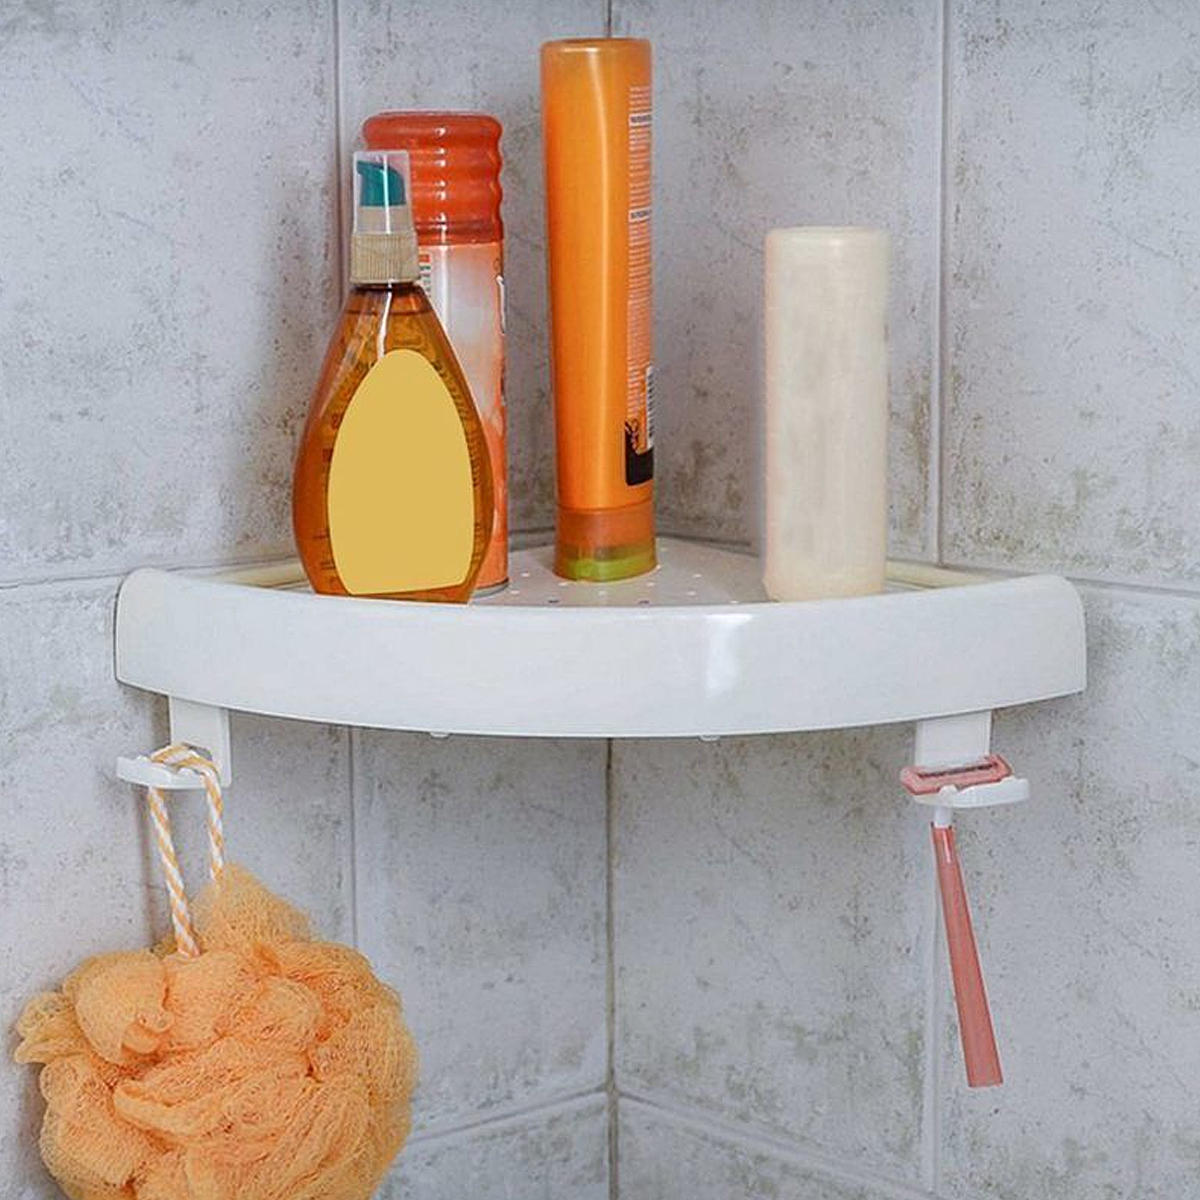 Bathroom Shower Corner Storage Paper Shelf Holder Shower Caddy Holder Rack White Organizer